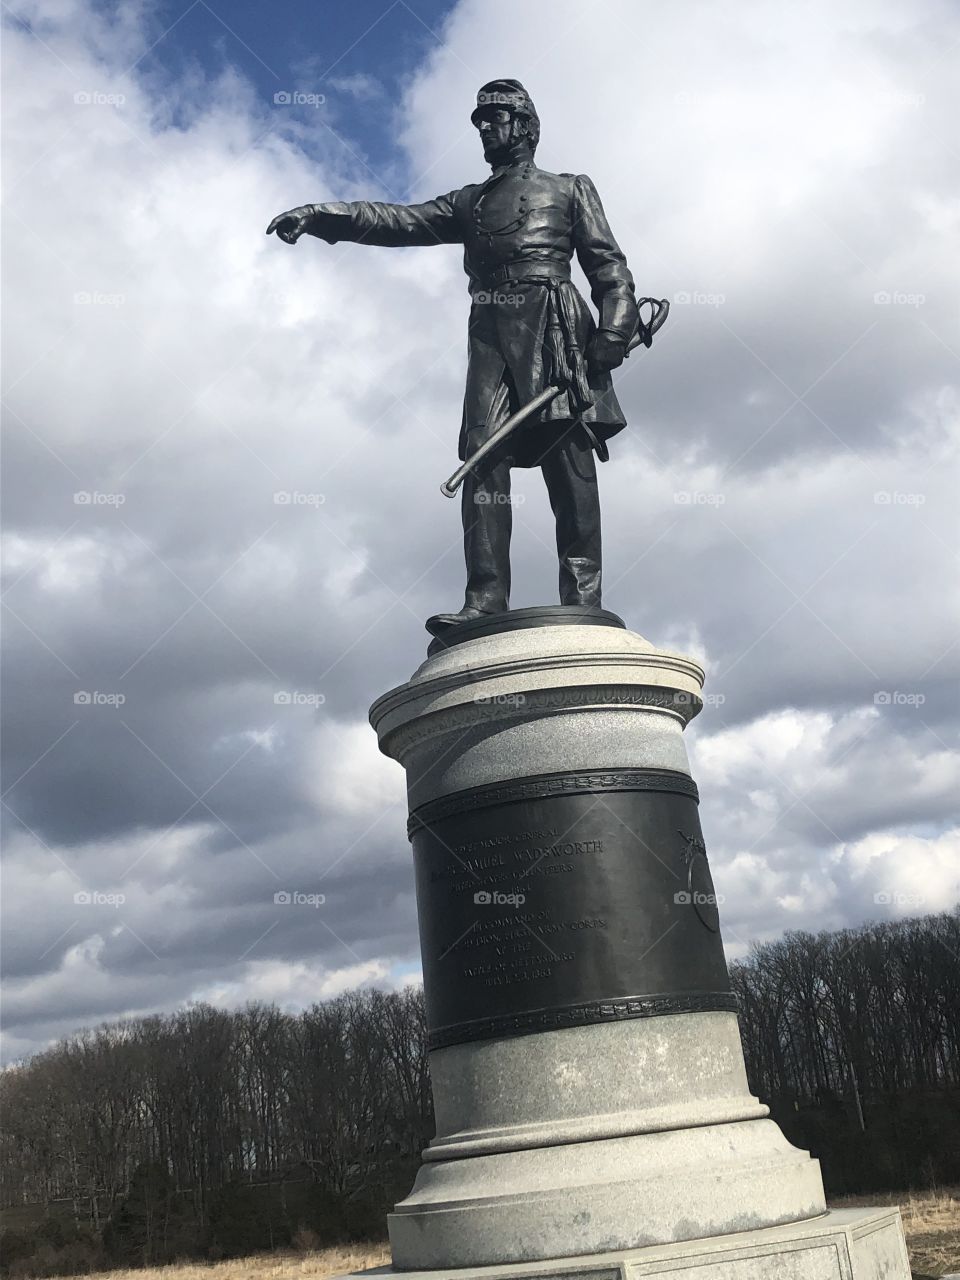 More Gettysburg 